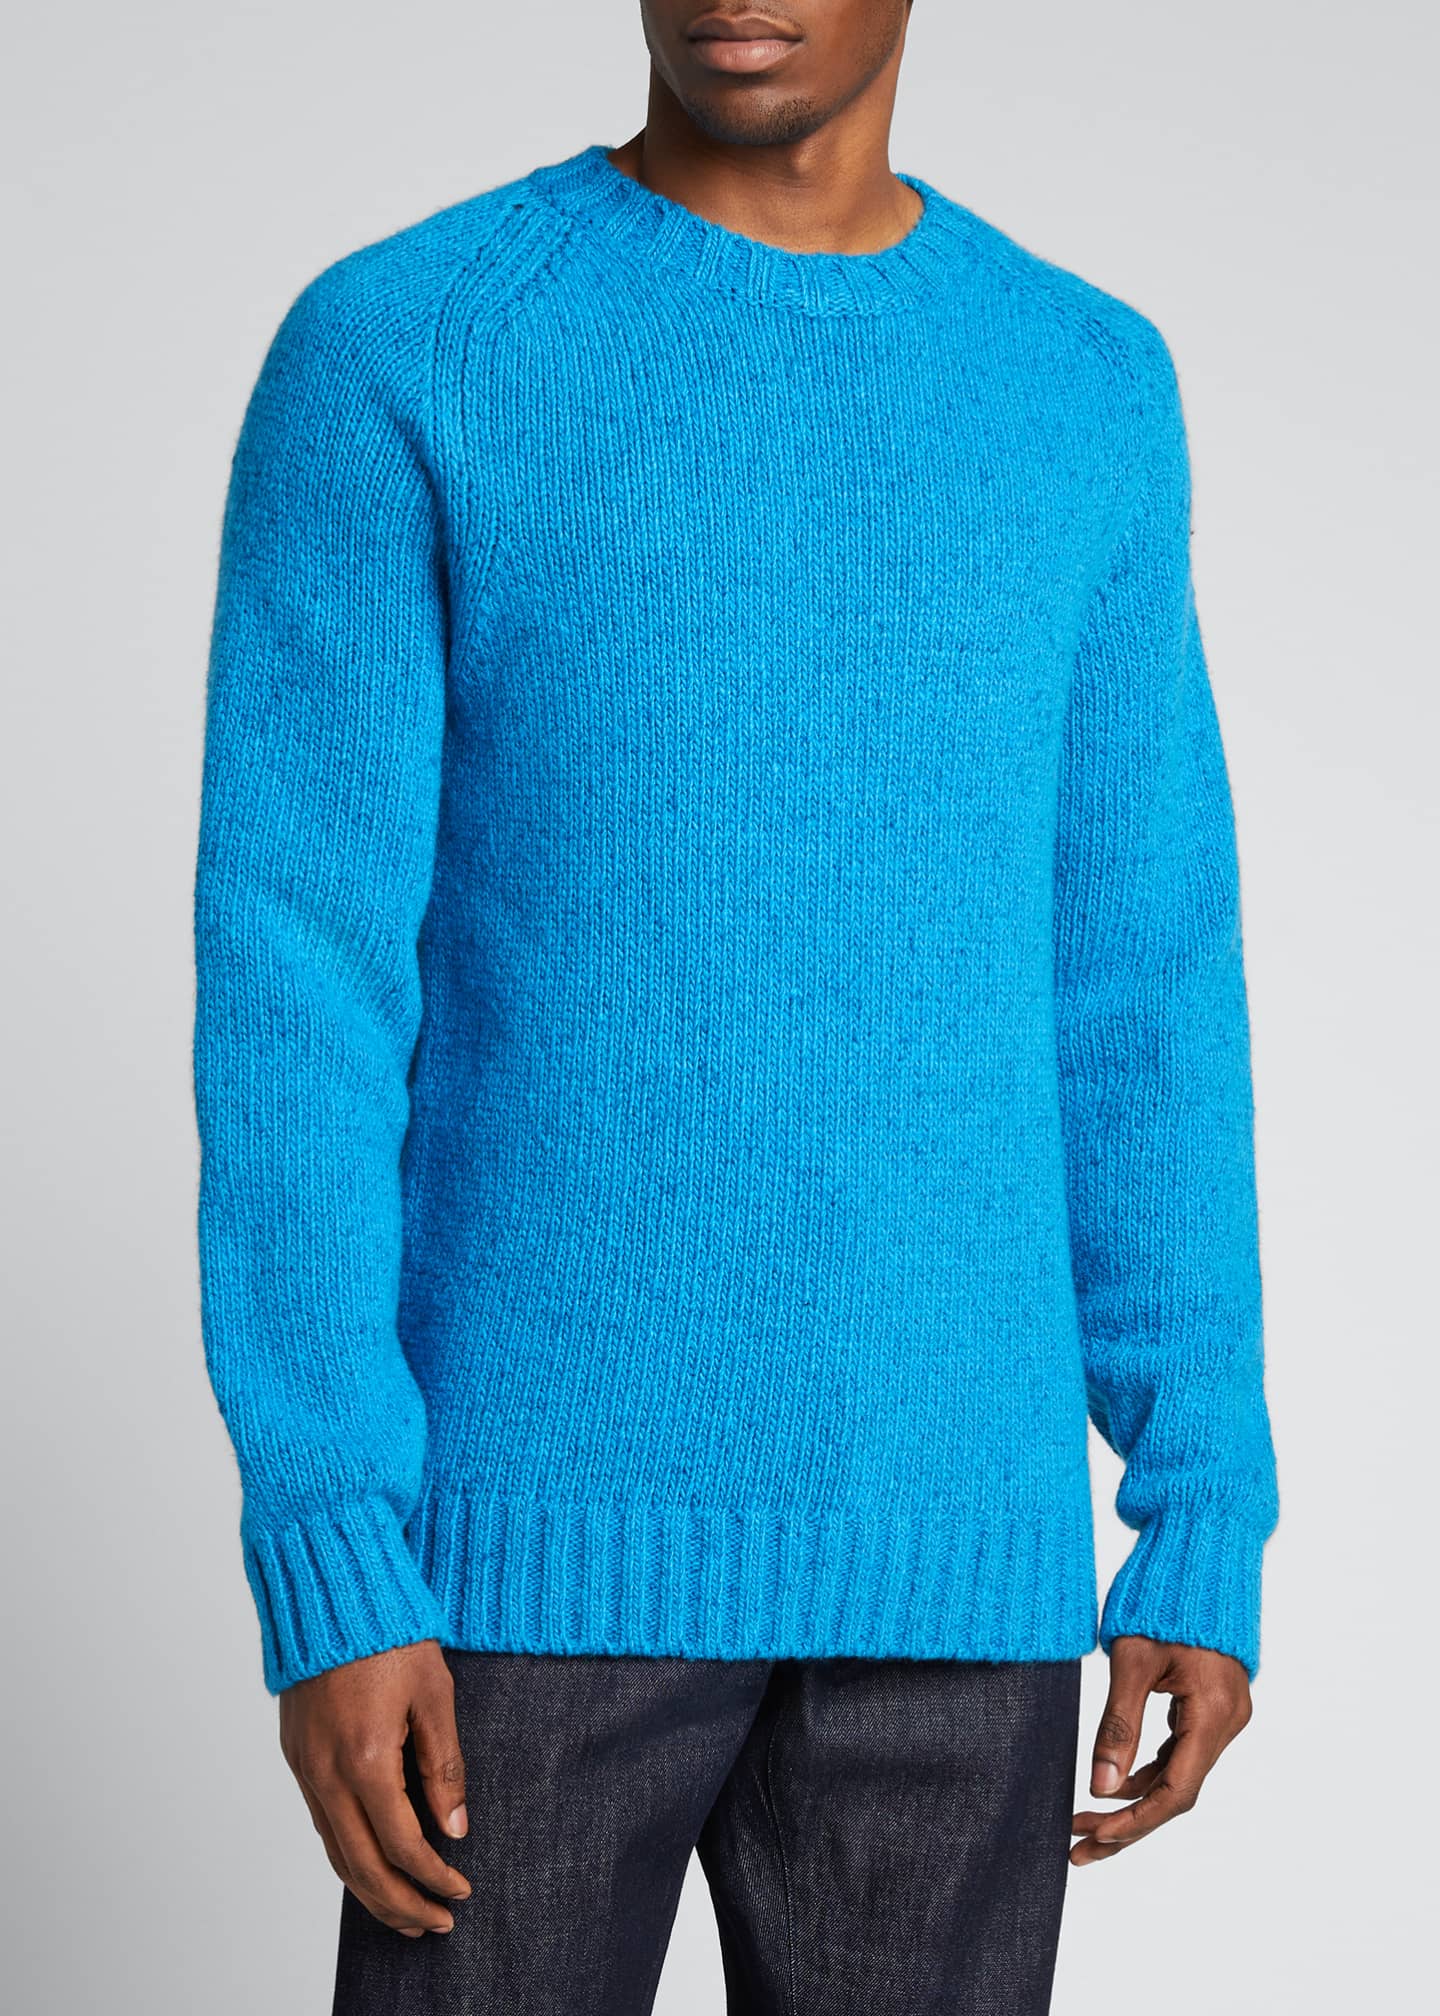 Gabriela Hearst Men's Juan Knit Cashmere Sweater - Bergdorf Goodman